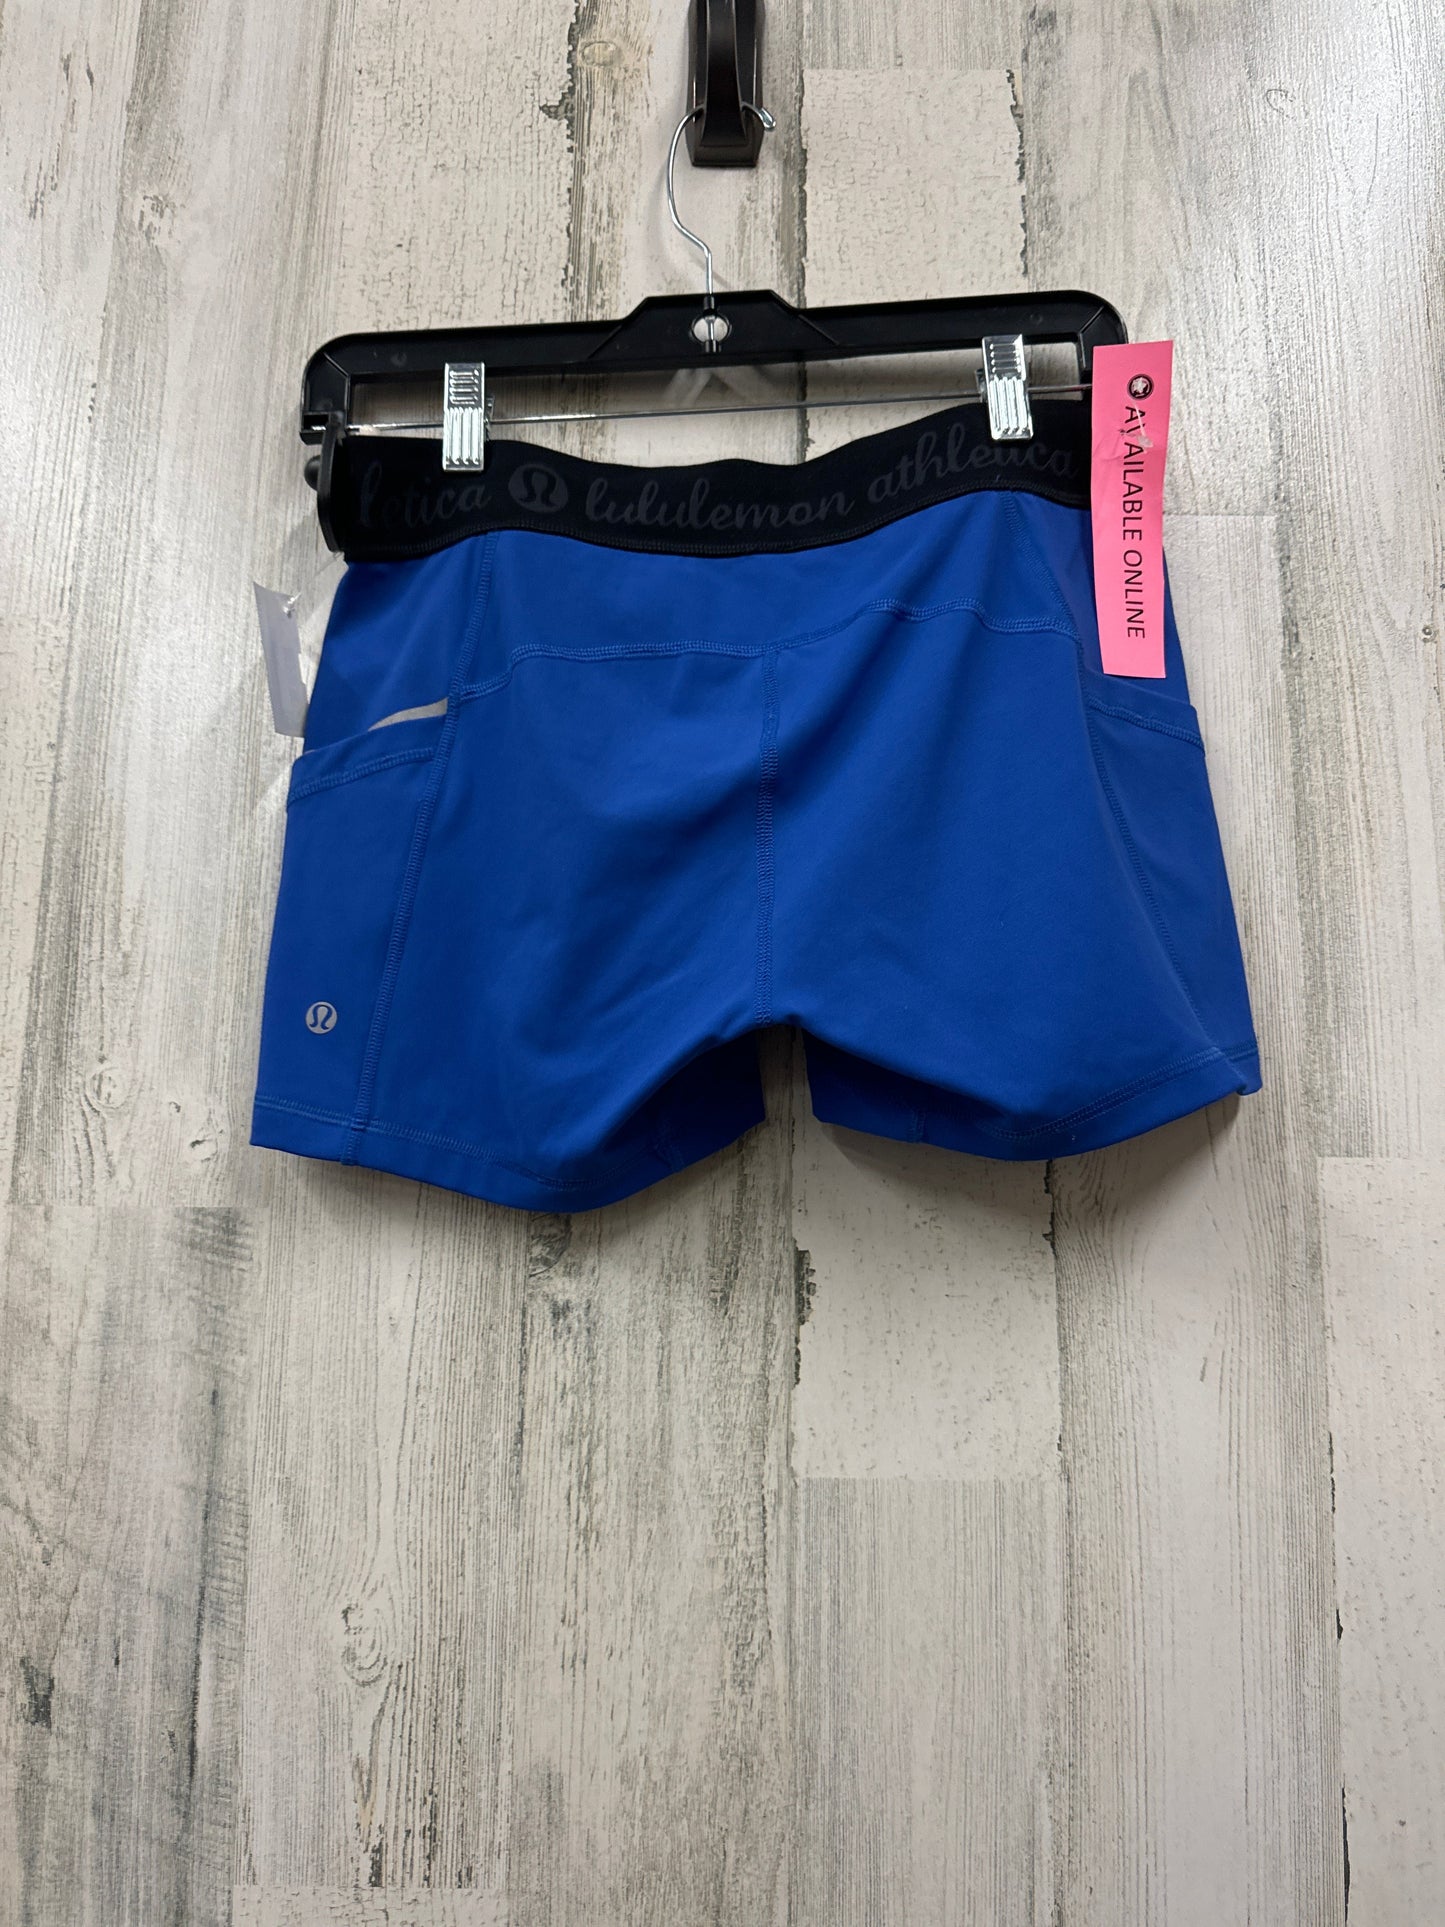 Blue Athletic Shorts Lululemon, Size M